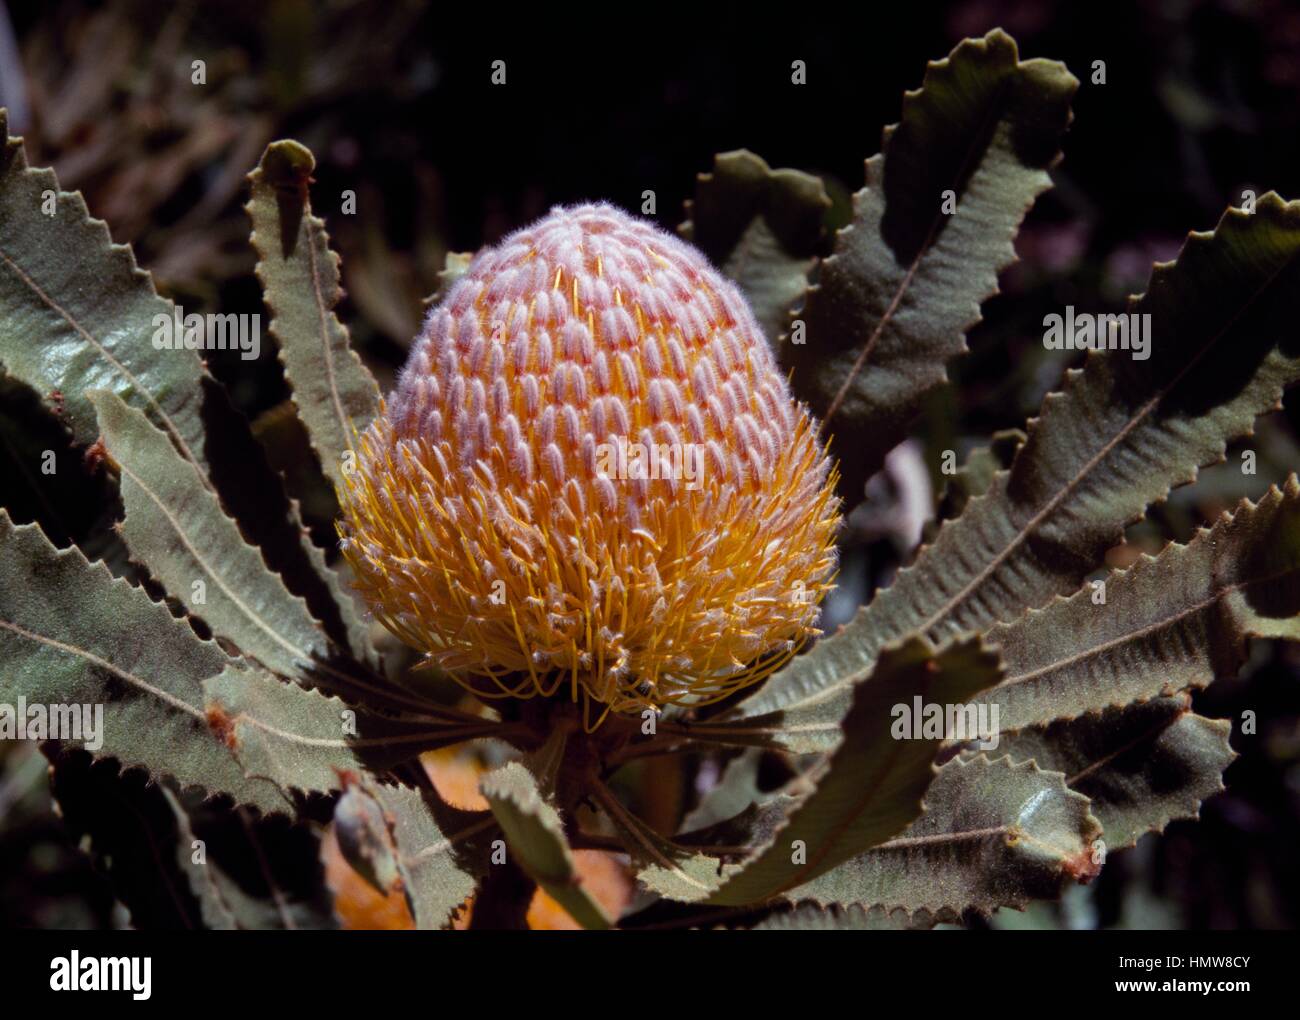 Burdett's Banksia (Banksia Burdettii), Proteaceae, Australia. Stock Photo